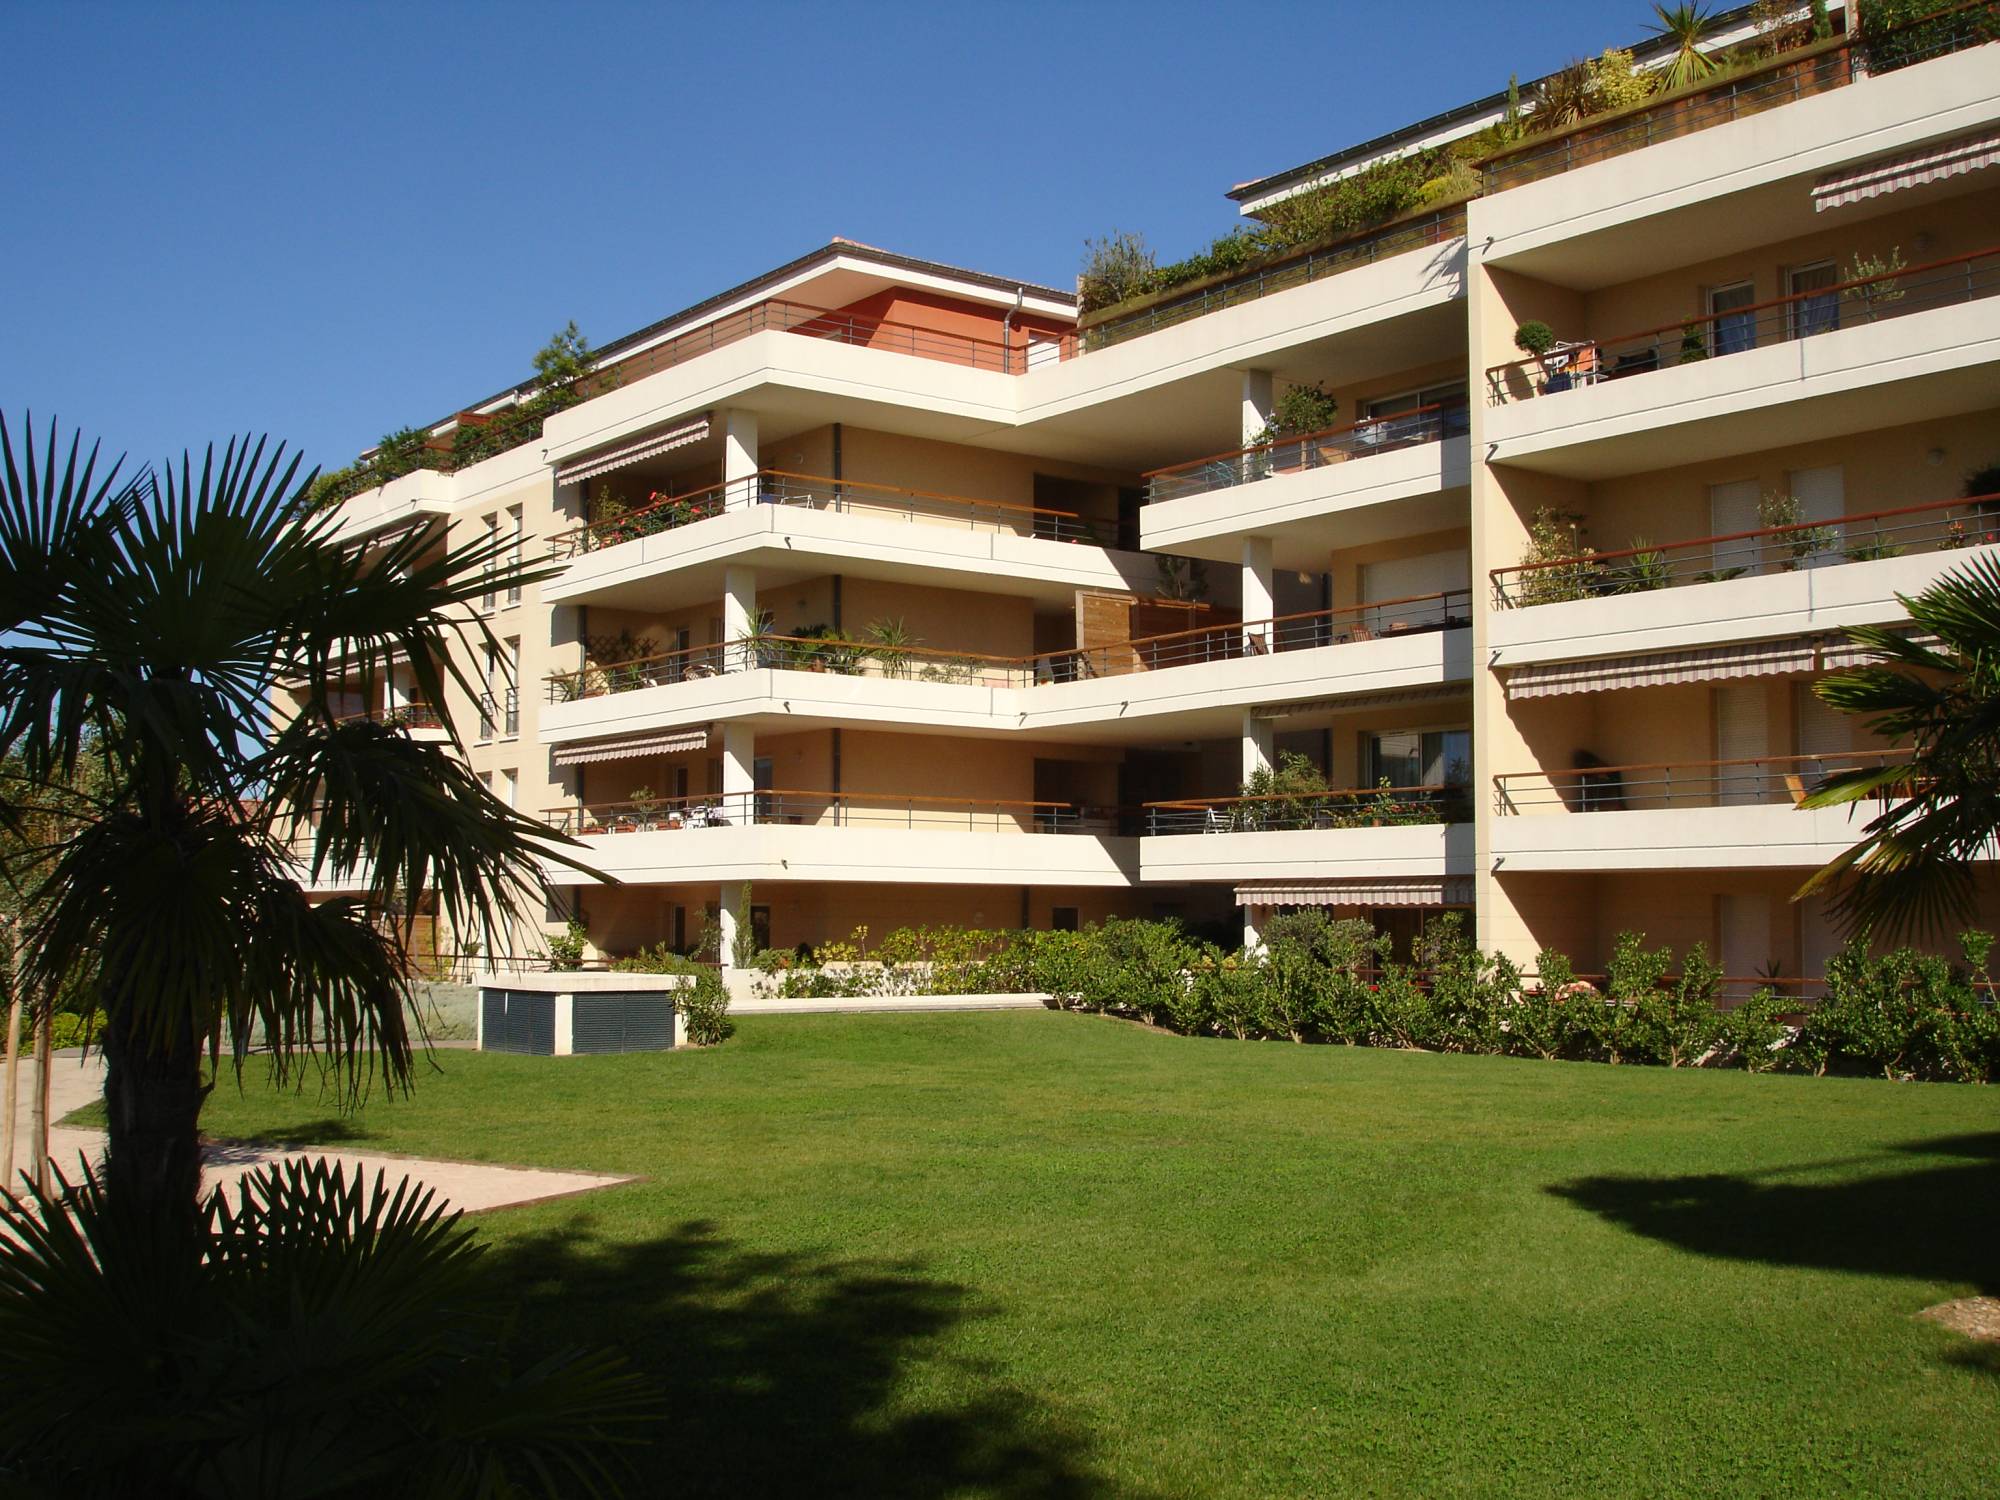 Investissement locatif -  Appartement 3 pièces avec grande terrasse en rdc Bois Luzy 13012 Marseille 